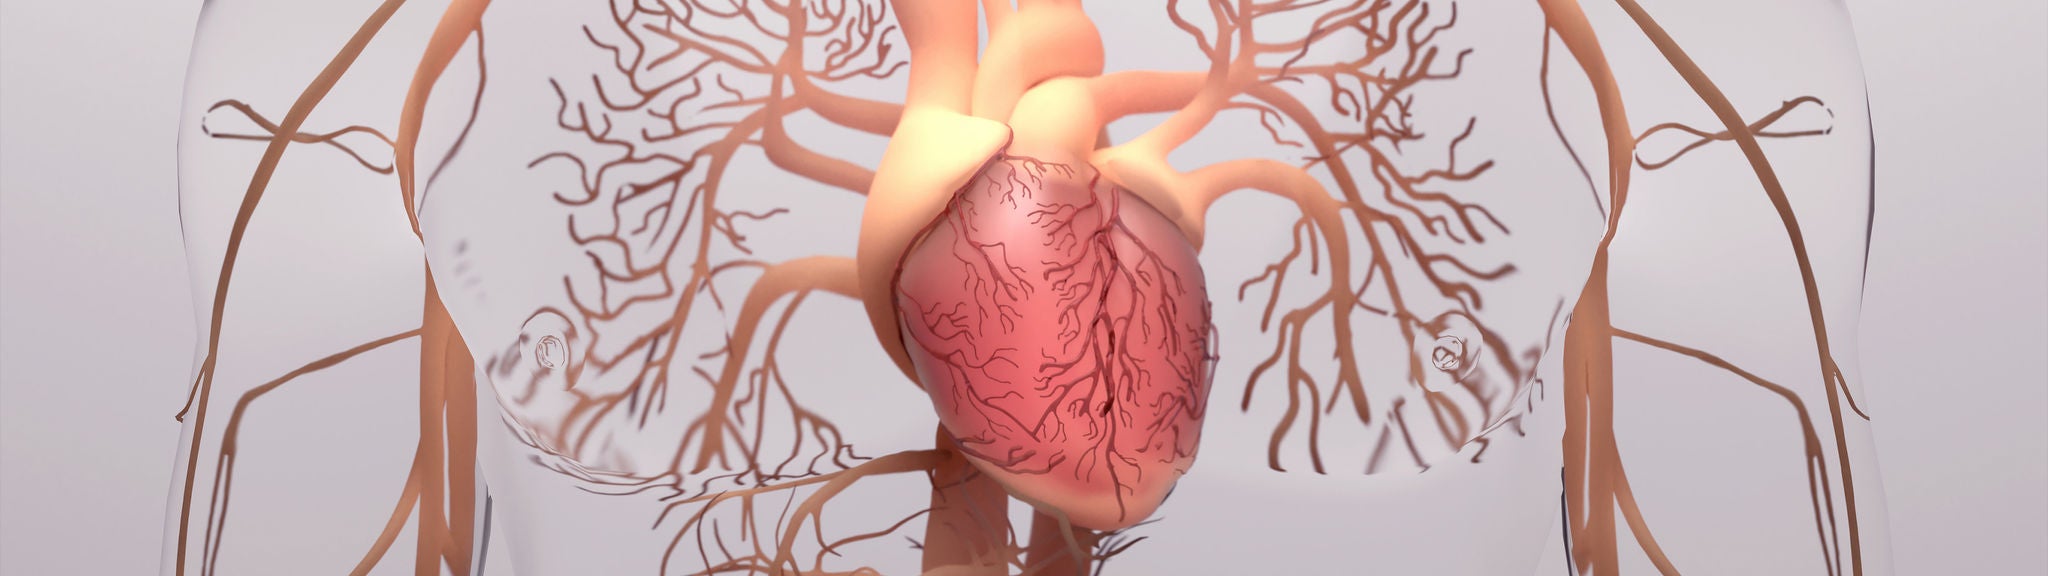 Eine Grafik mit Arterien, die vom Herzen in den Körper führen